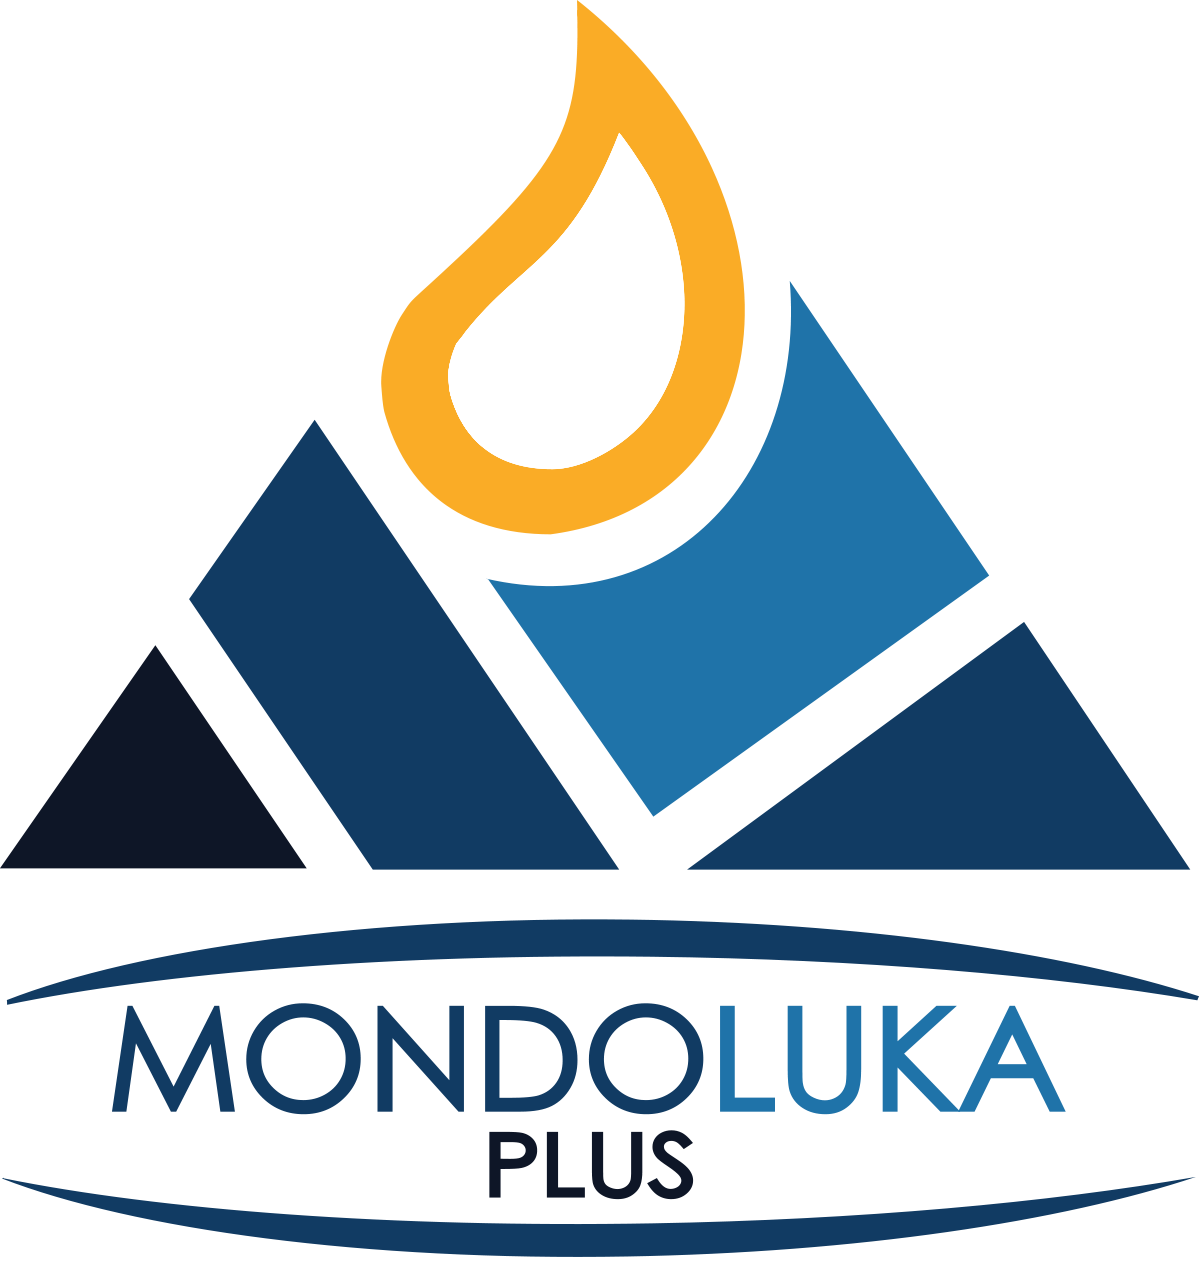 Mondoluka logo